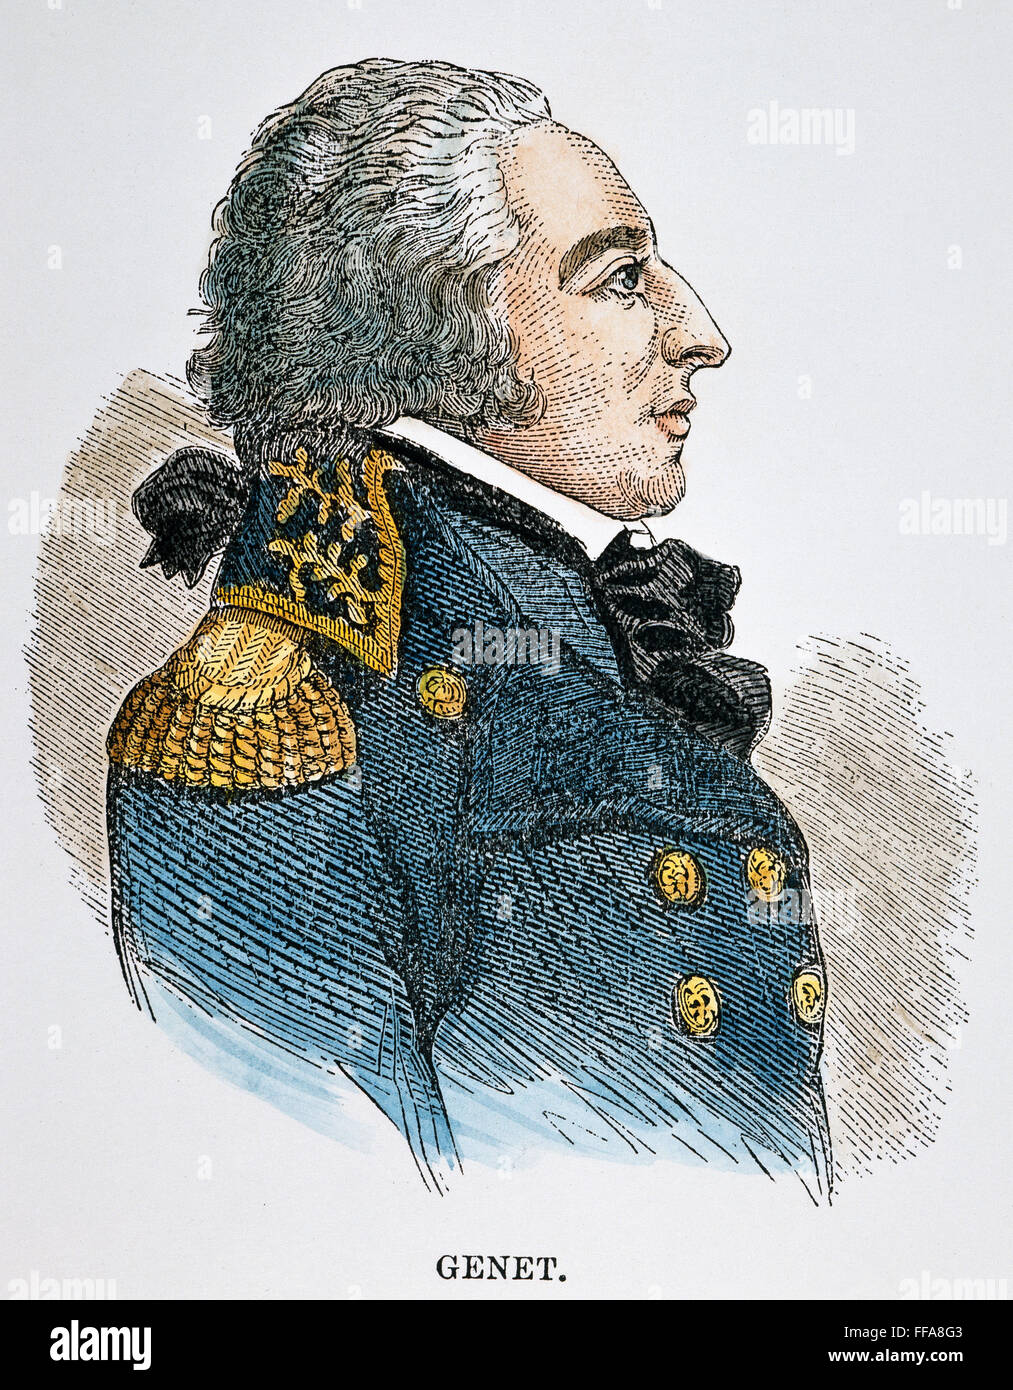 EDMOND CHARLES GEN╔T /n(1763-1834). Als "Bürger" GenΘt bekannt. Amerikanische Gravur, 19. Jahrhundert. Stockfoto